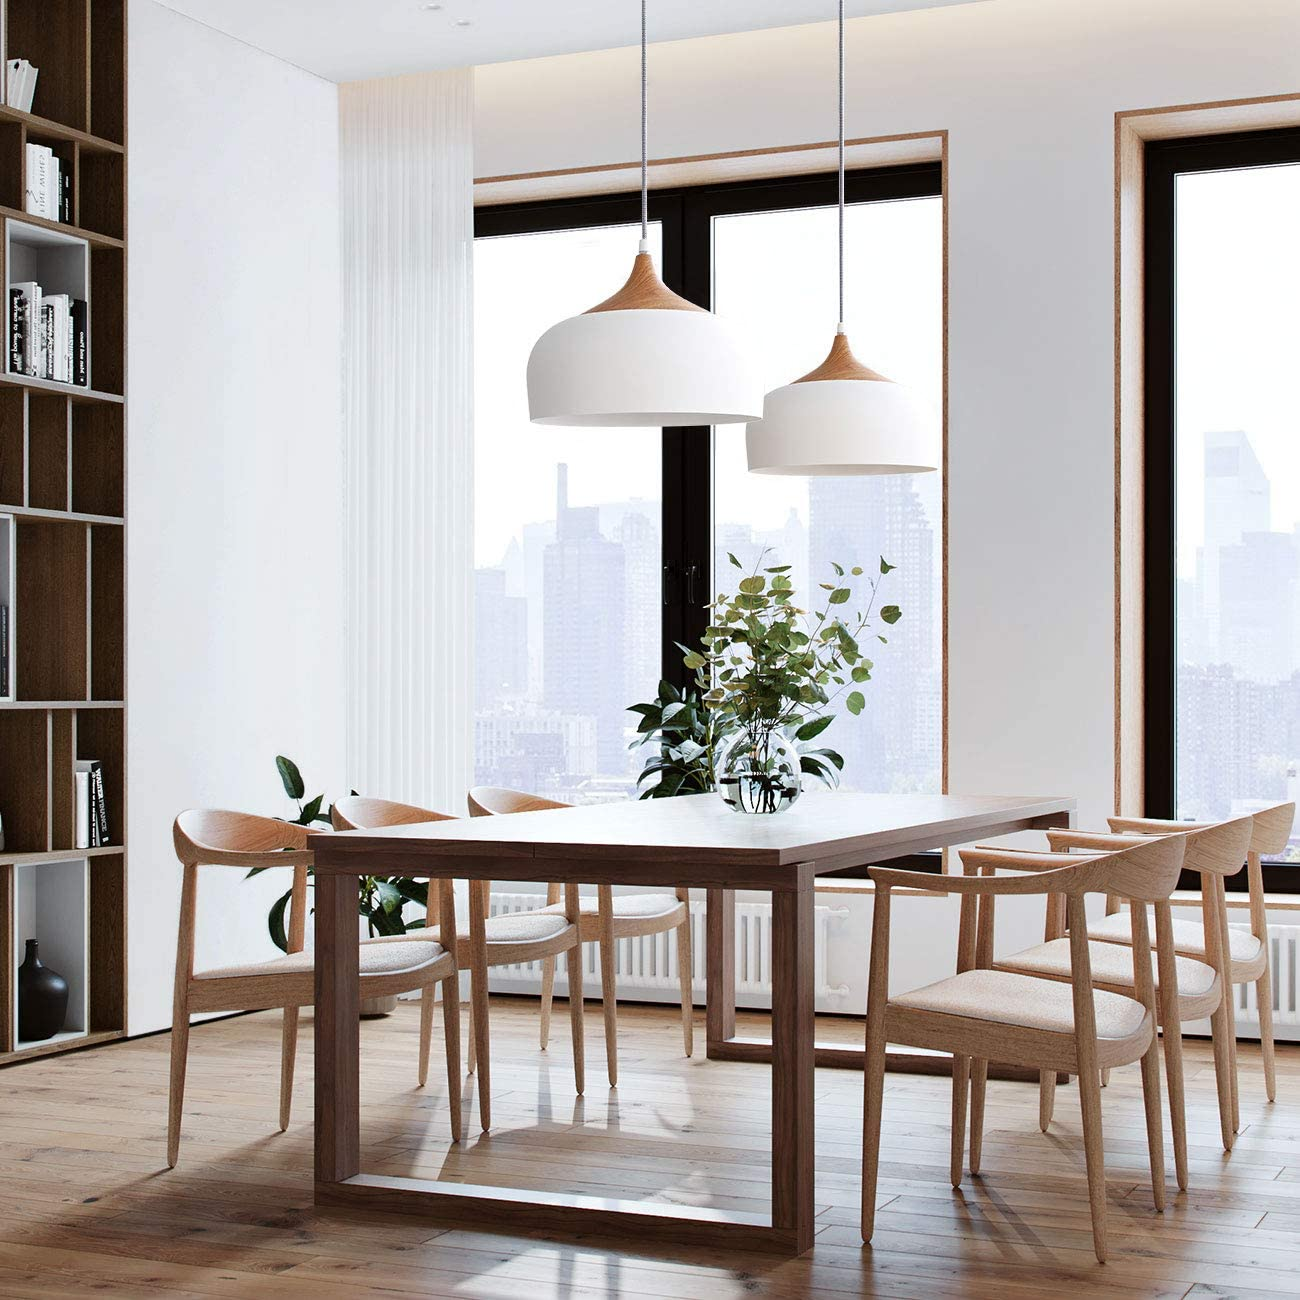 TOMONS LED Deckenlampe Skandinavisch Simpler Esszimmer für Wohnzimmer warmweiß Restaurant Stil Pendelleuchte Moderner